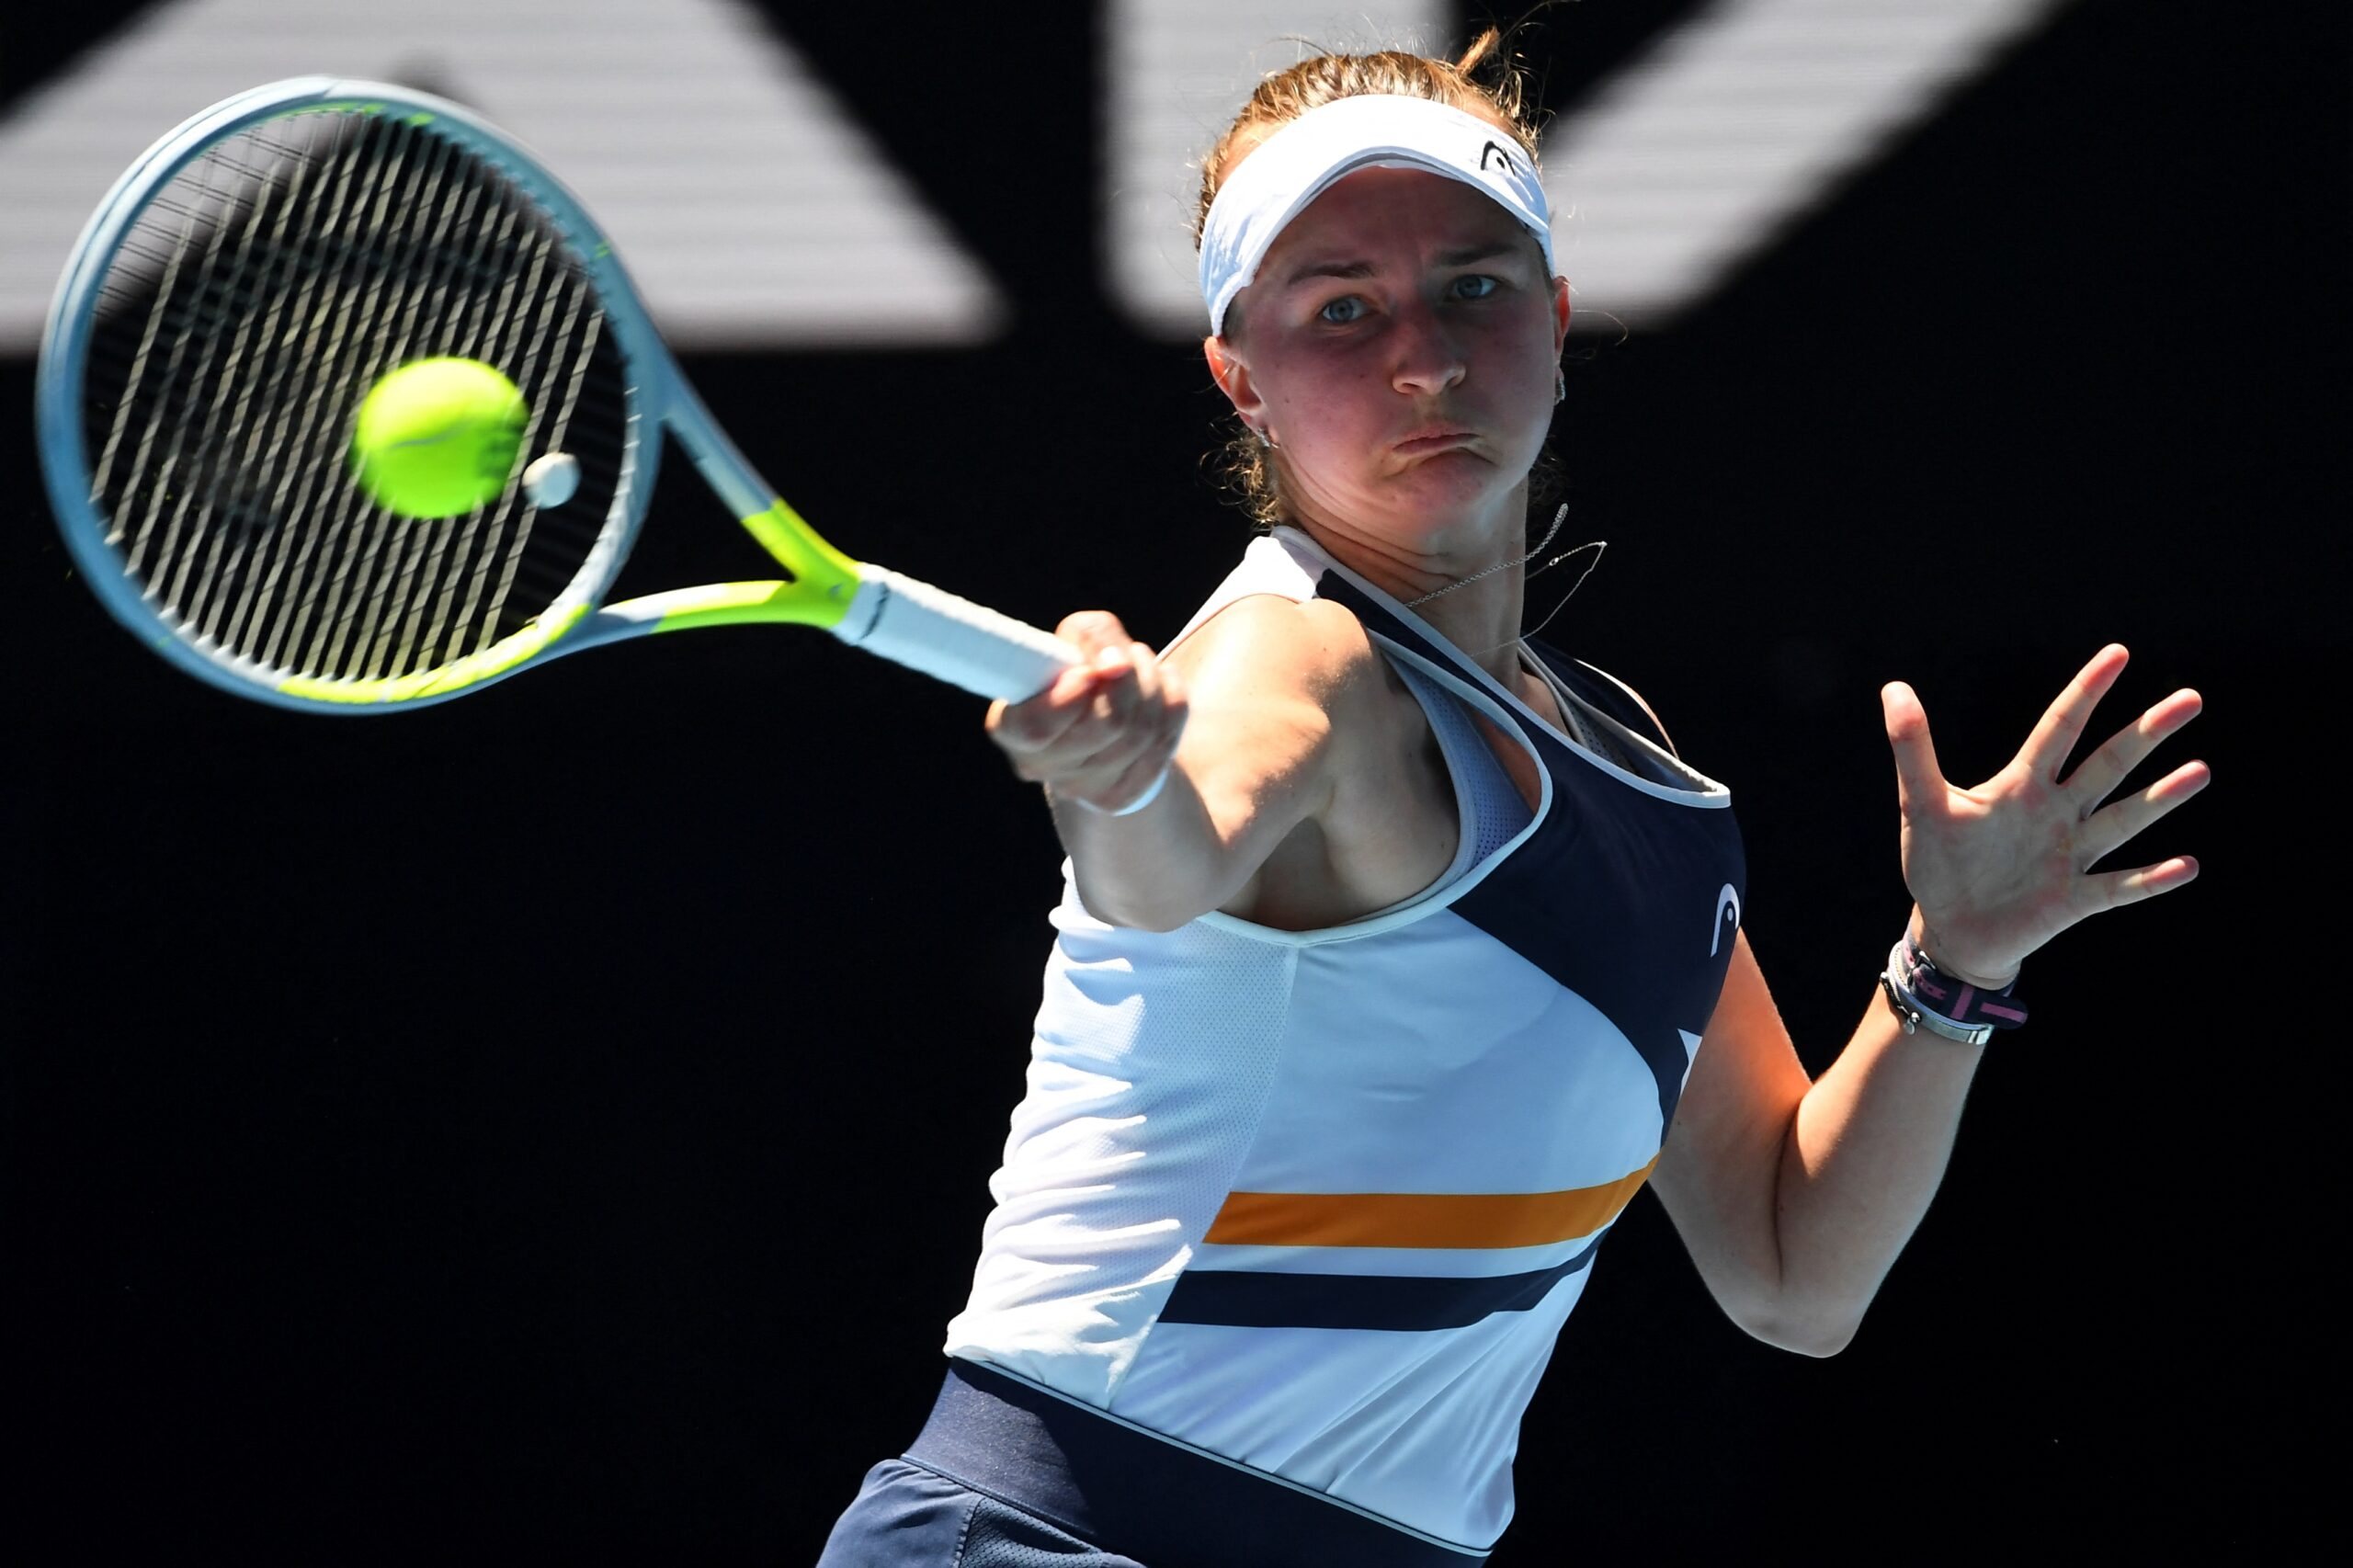 Po wygraniu Australian Open Krejczikova stawia sobie nowy cel